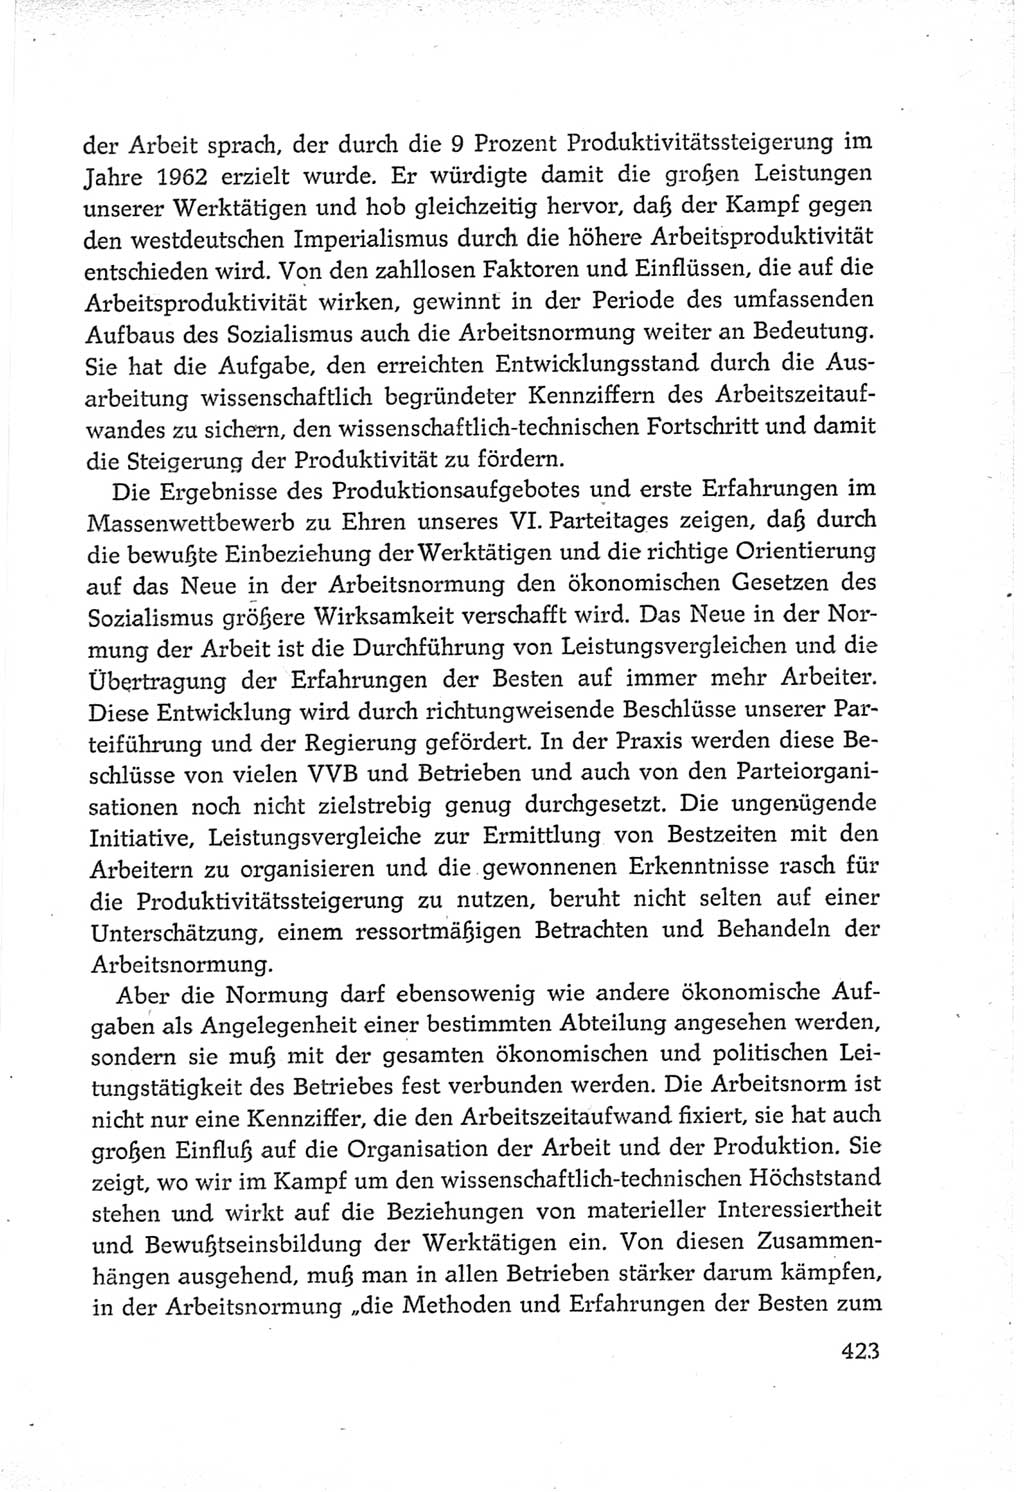 Protokoll der Verhandlungen des Ⅵ. Parteitages der Sozialistischen Einheitspartei Deutschlands (SED) [Deutsche Demokratische Republik (DDR)] 1963, Band Ⅲ, Seite 423 (Prot. Verh. Ⅵ. PT SED DDR 1963, Bd. Ⅲ, S. 423)